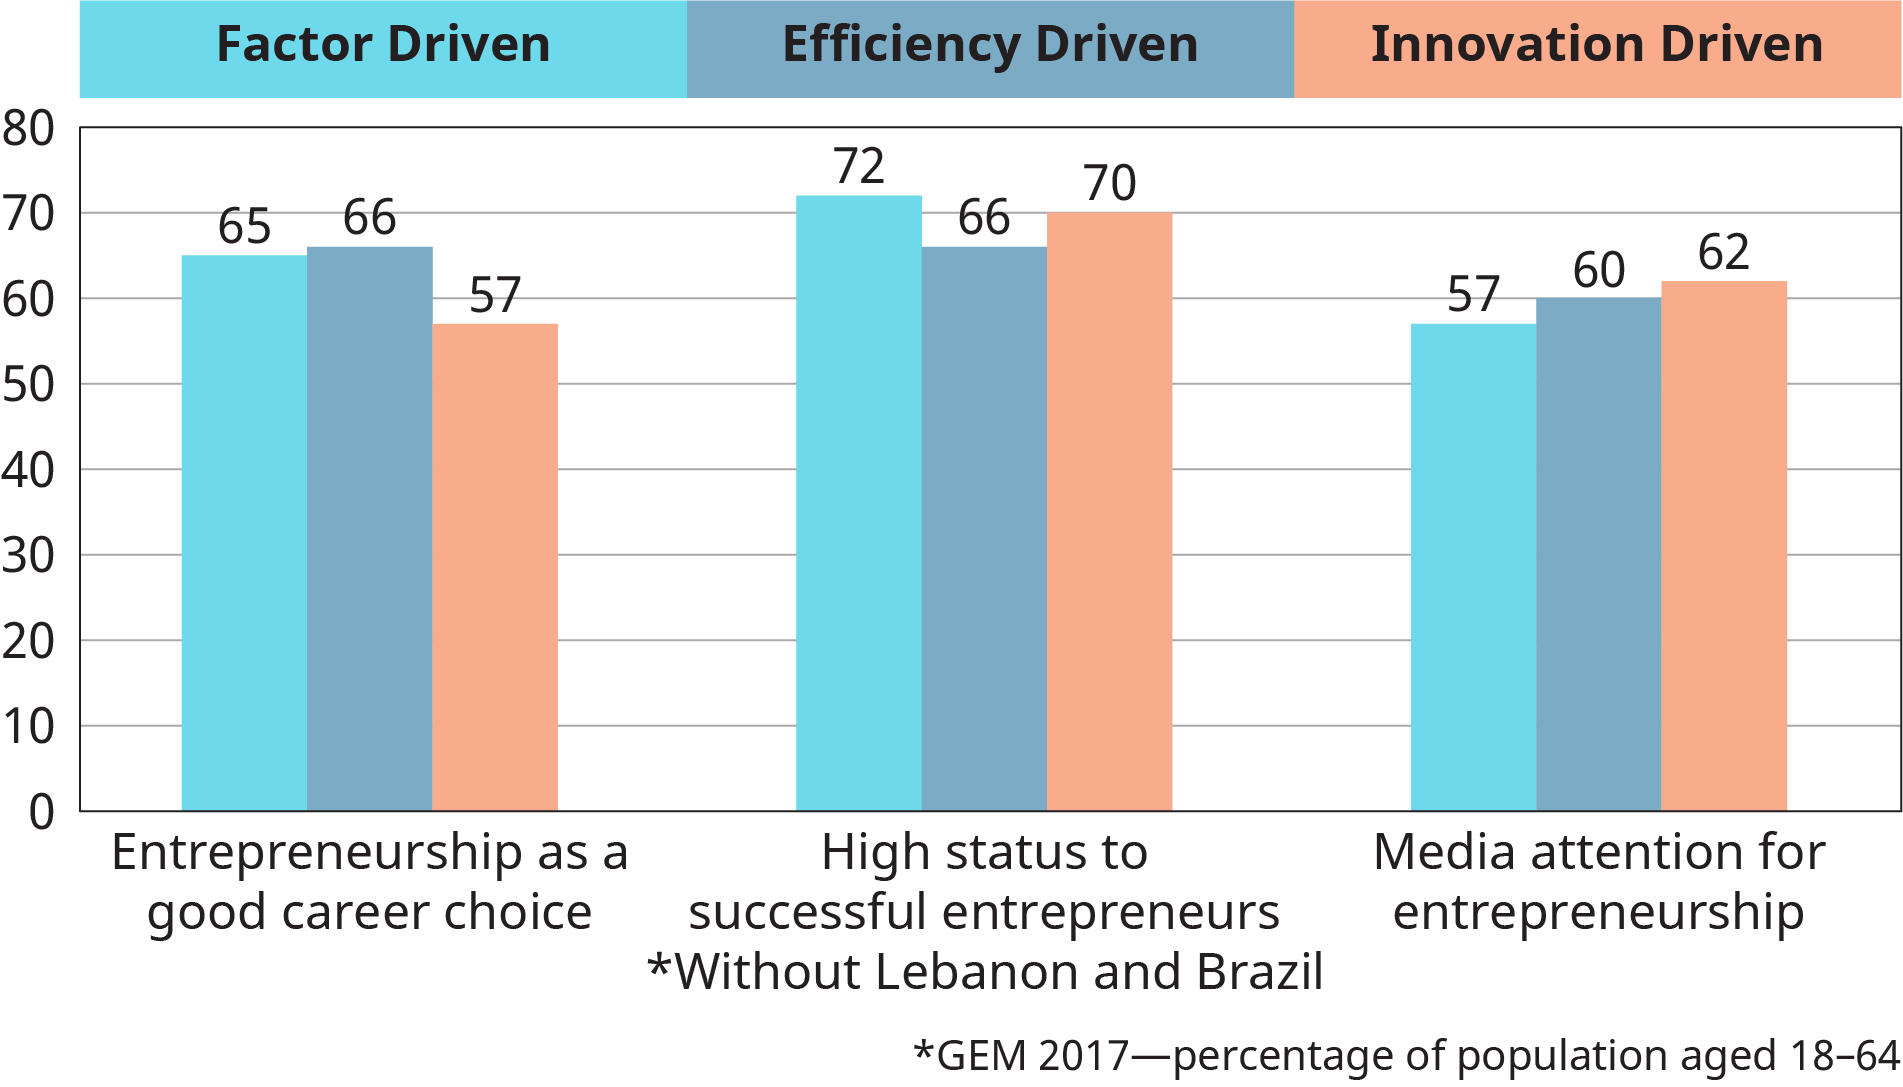 Une représentation graphique trace les moyennes des groupes de développement pour les valeurs sociétales relatives à l'entrepreneuriat en fonction des facteurs, de l'efficacité et de l'innovation.